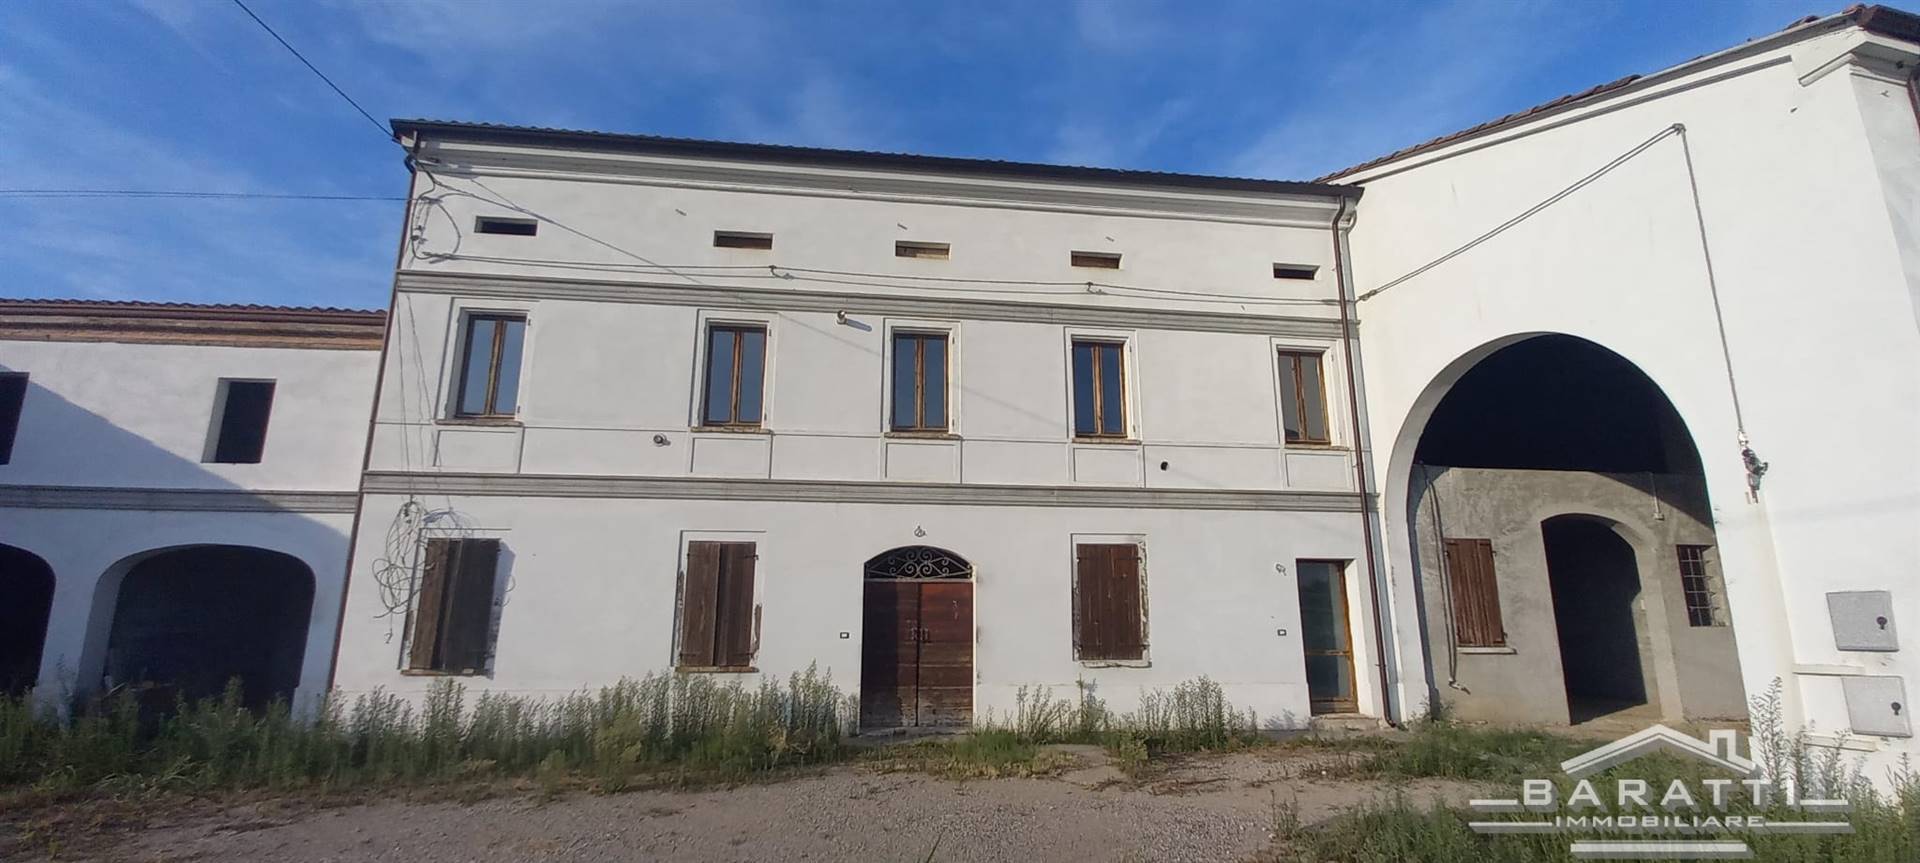 Rustico / Casale in vendita a Luzzara - Zona: Codisotto